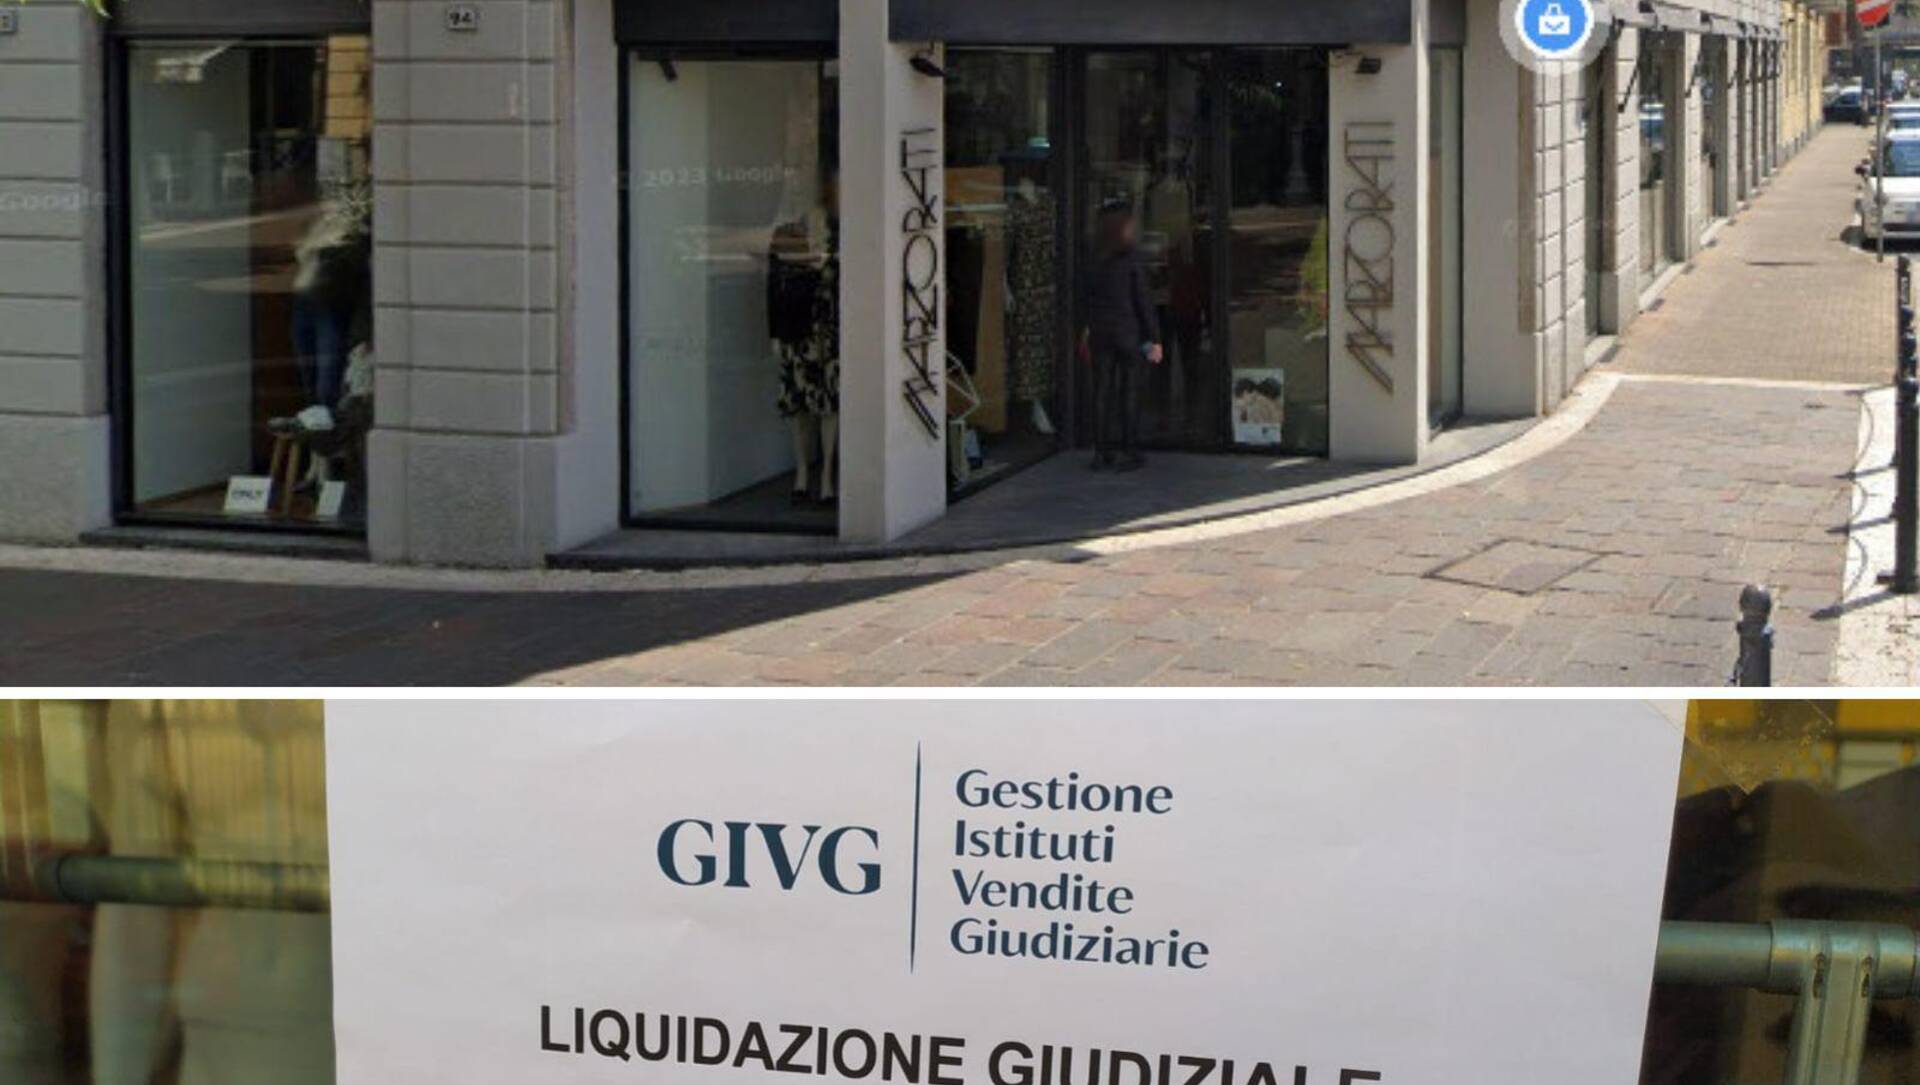 Saronno, Marzorati abbigliamento in liquidazione giudiziale: addio ad una delle vetrine storiche di corso Italia